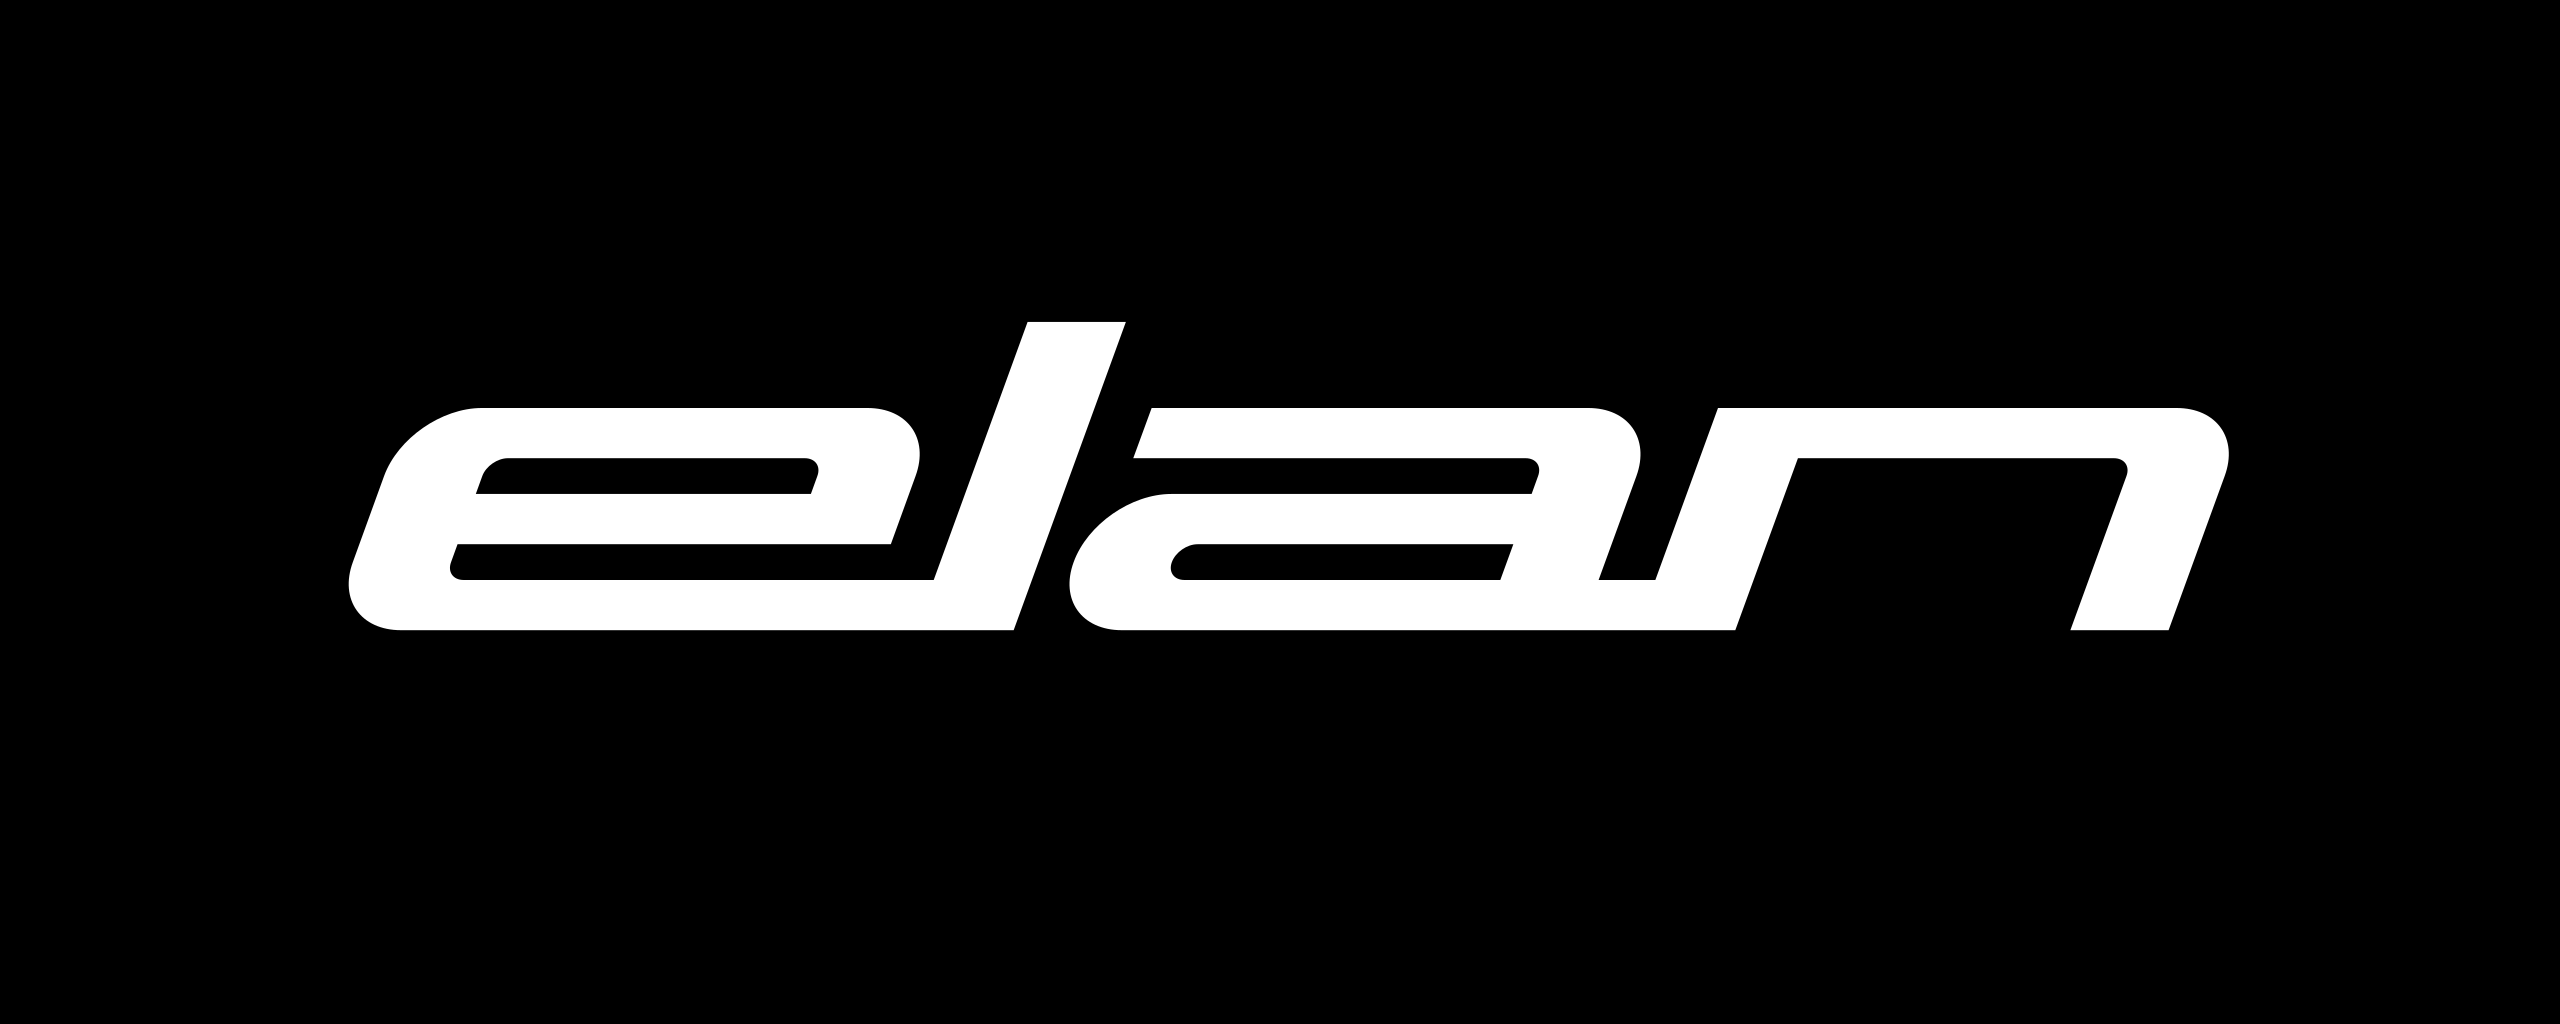 Elan-logo.svg.png (13 KB)